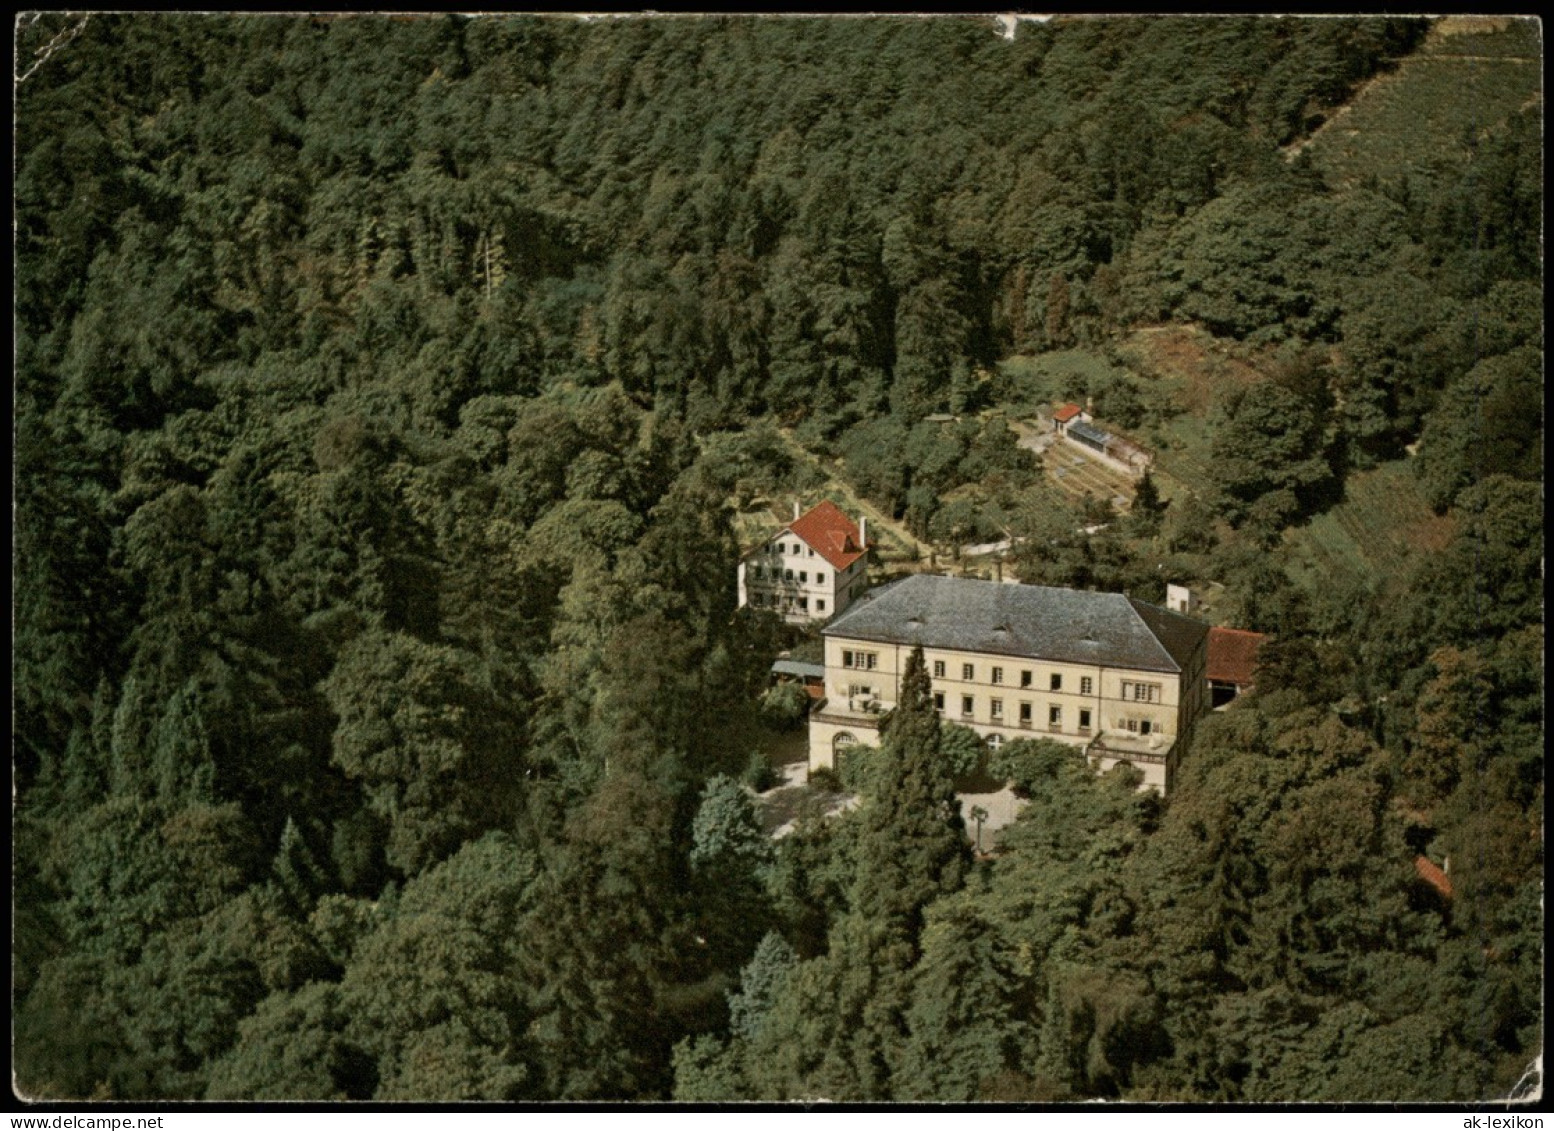 Gleisweiler-Edenkoben Sanatorium Bad Gleisweiler Luftbild über Landau 1968 - Edenkoben